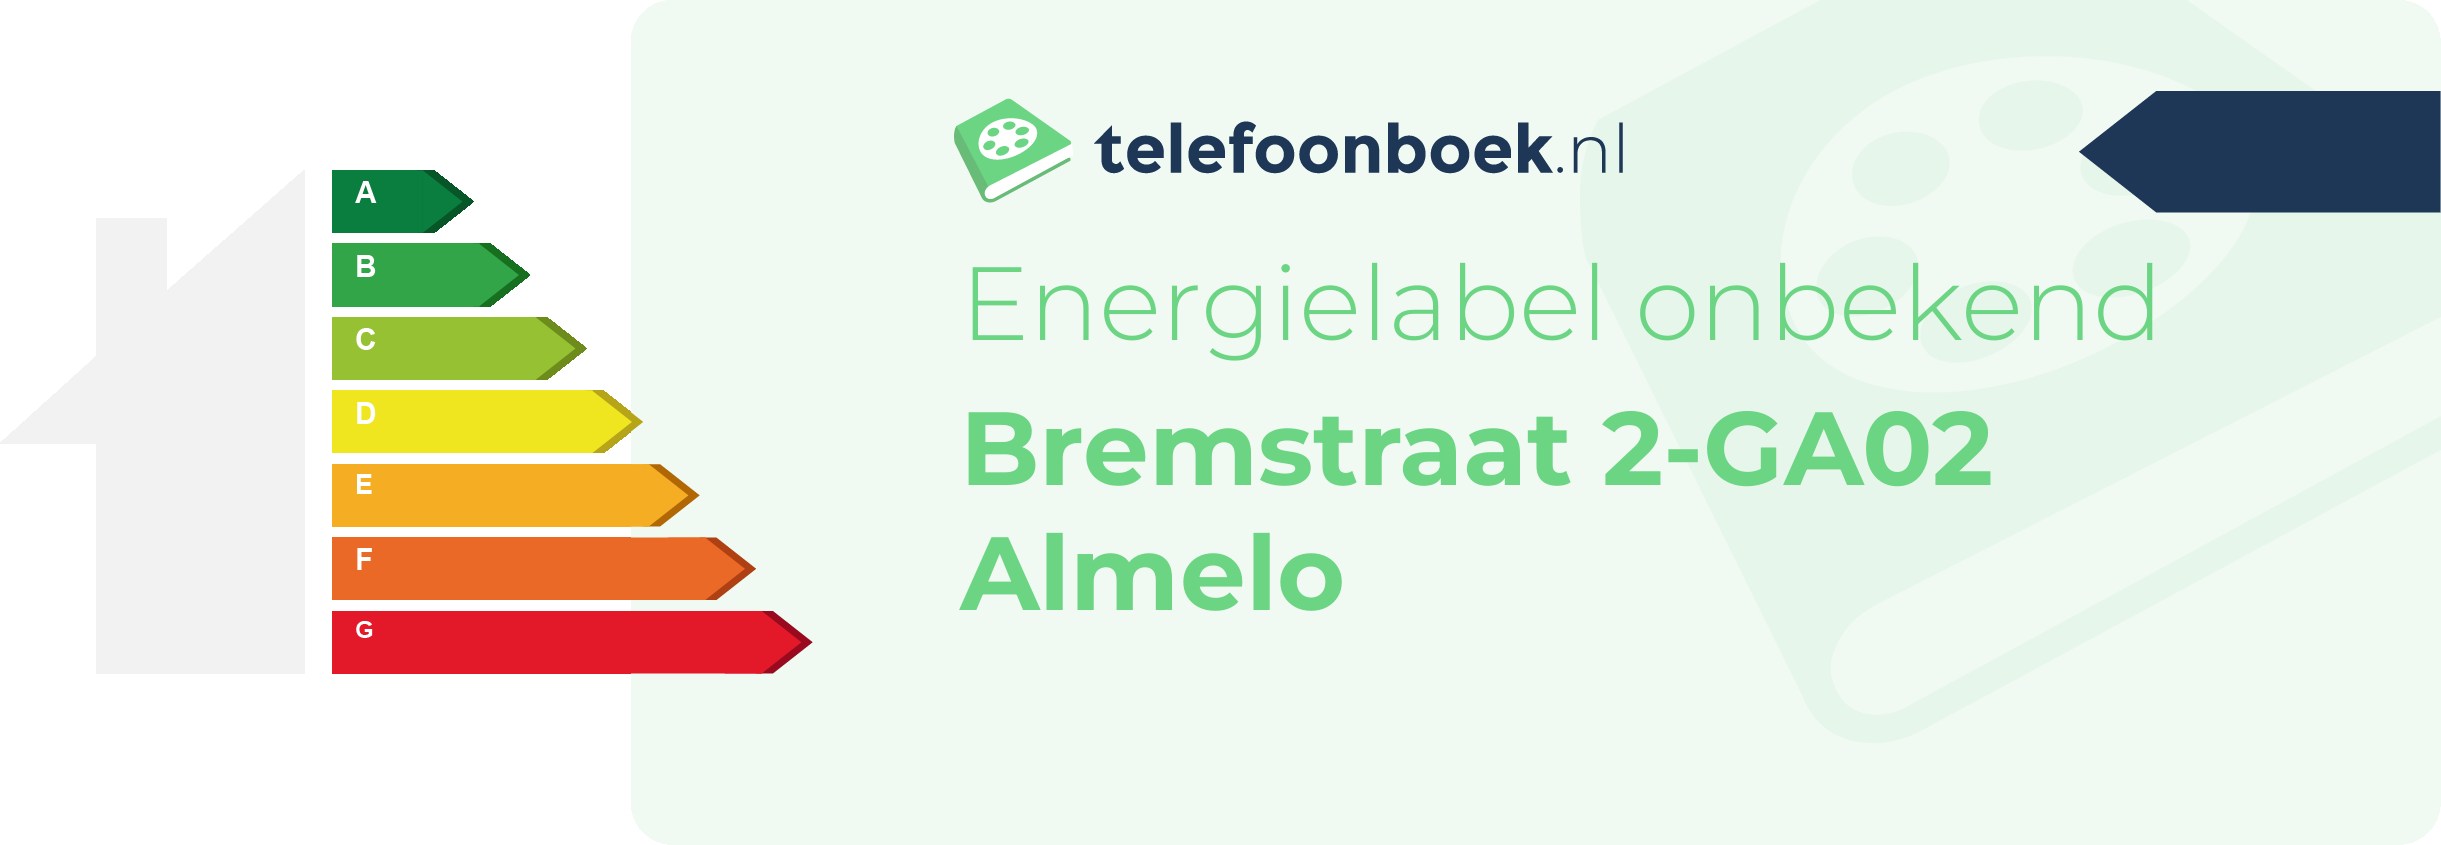 Energielabel Bremstraat 2-GA02 Almelo